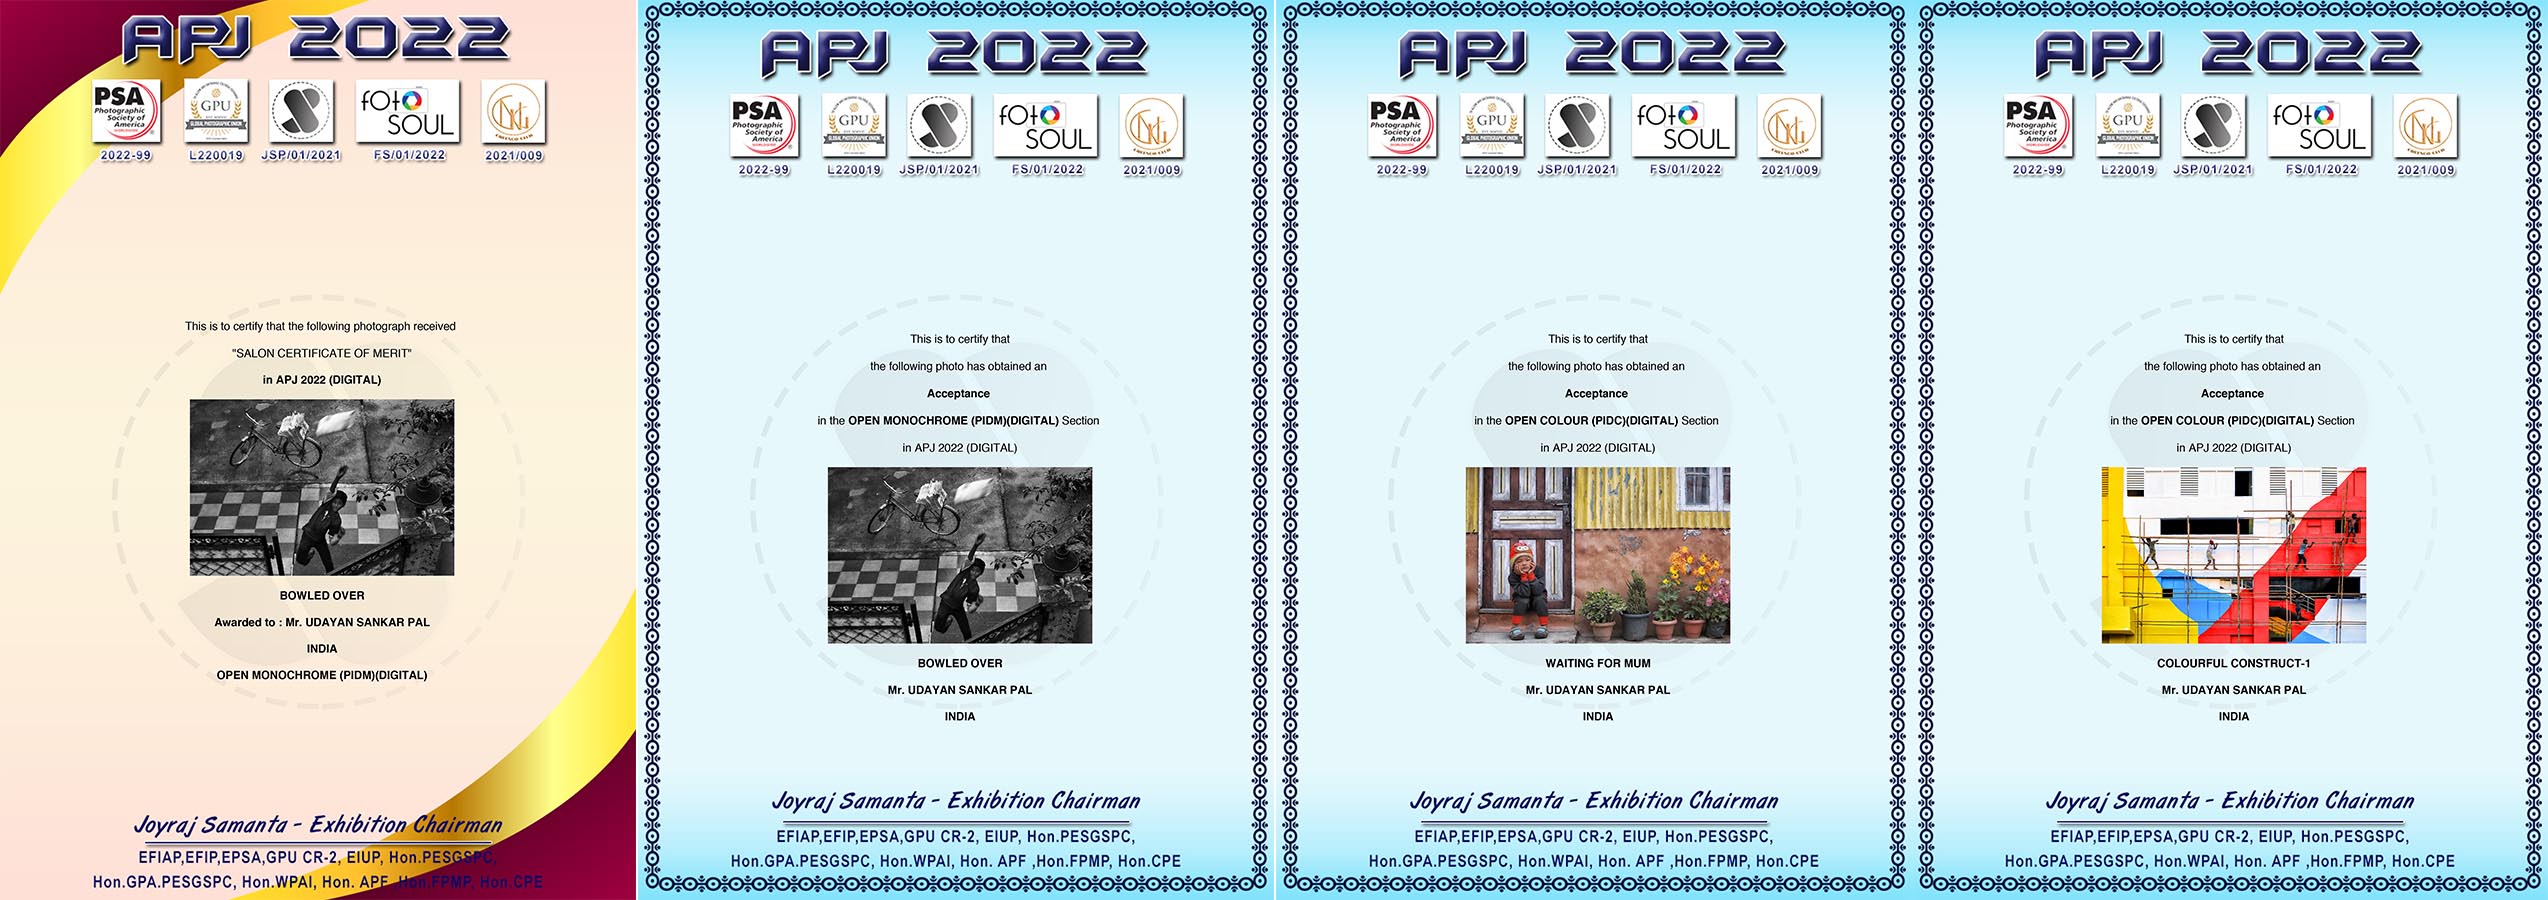 APJ-2022